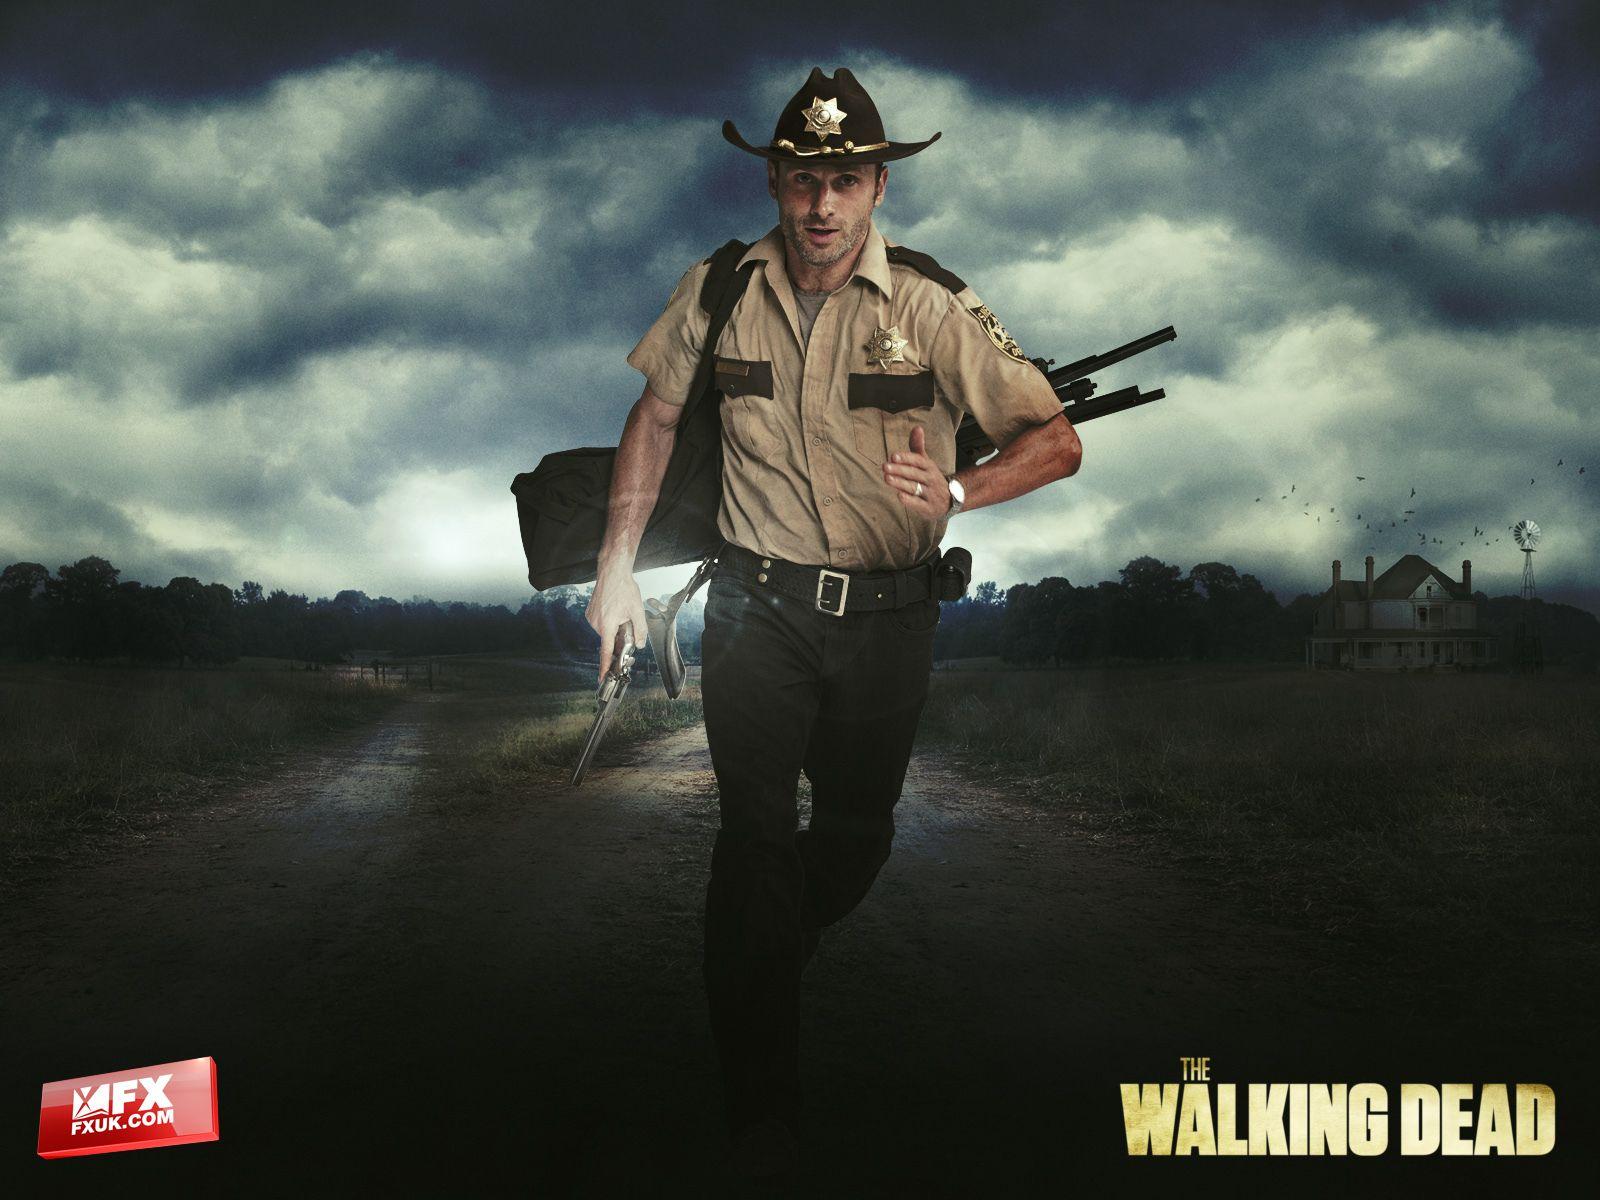 Rick Grimes Walking Dead Wallpaper. Walking Dead